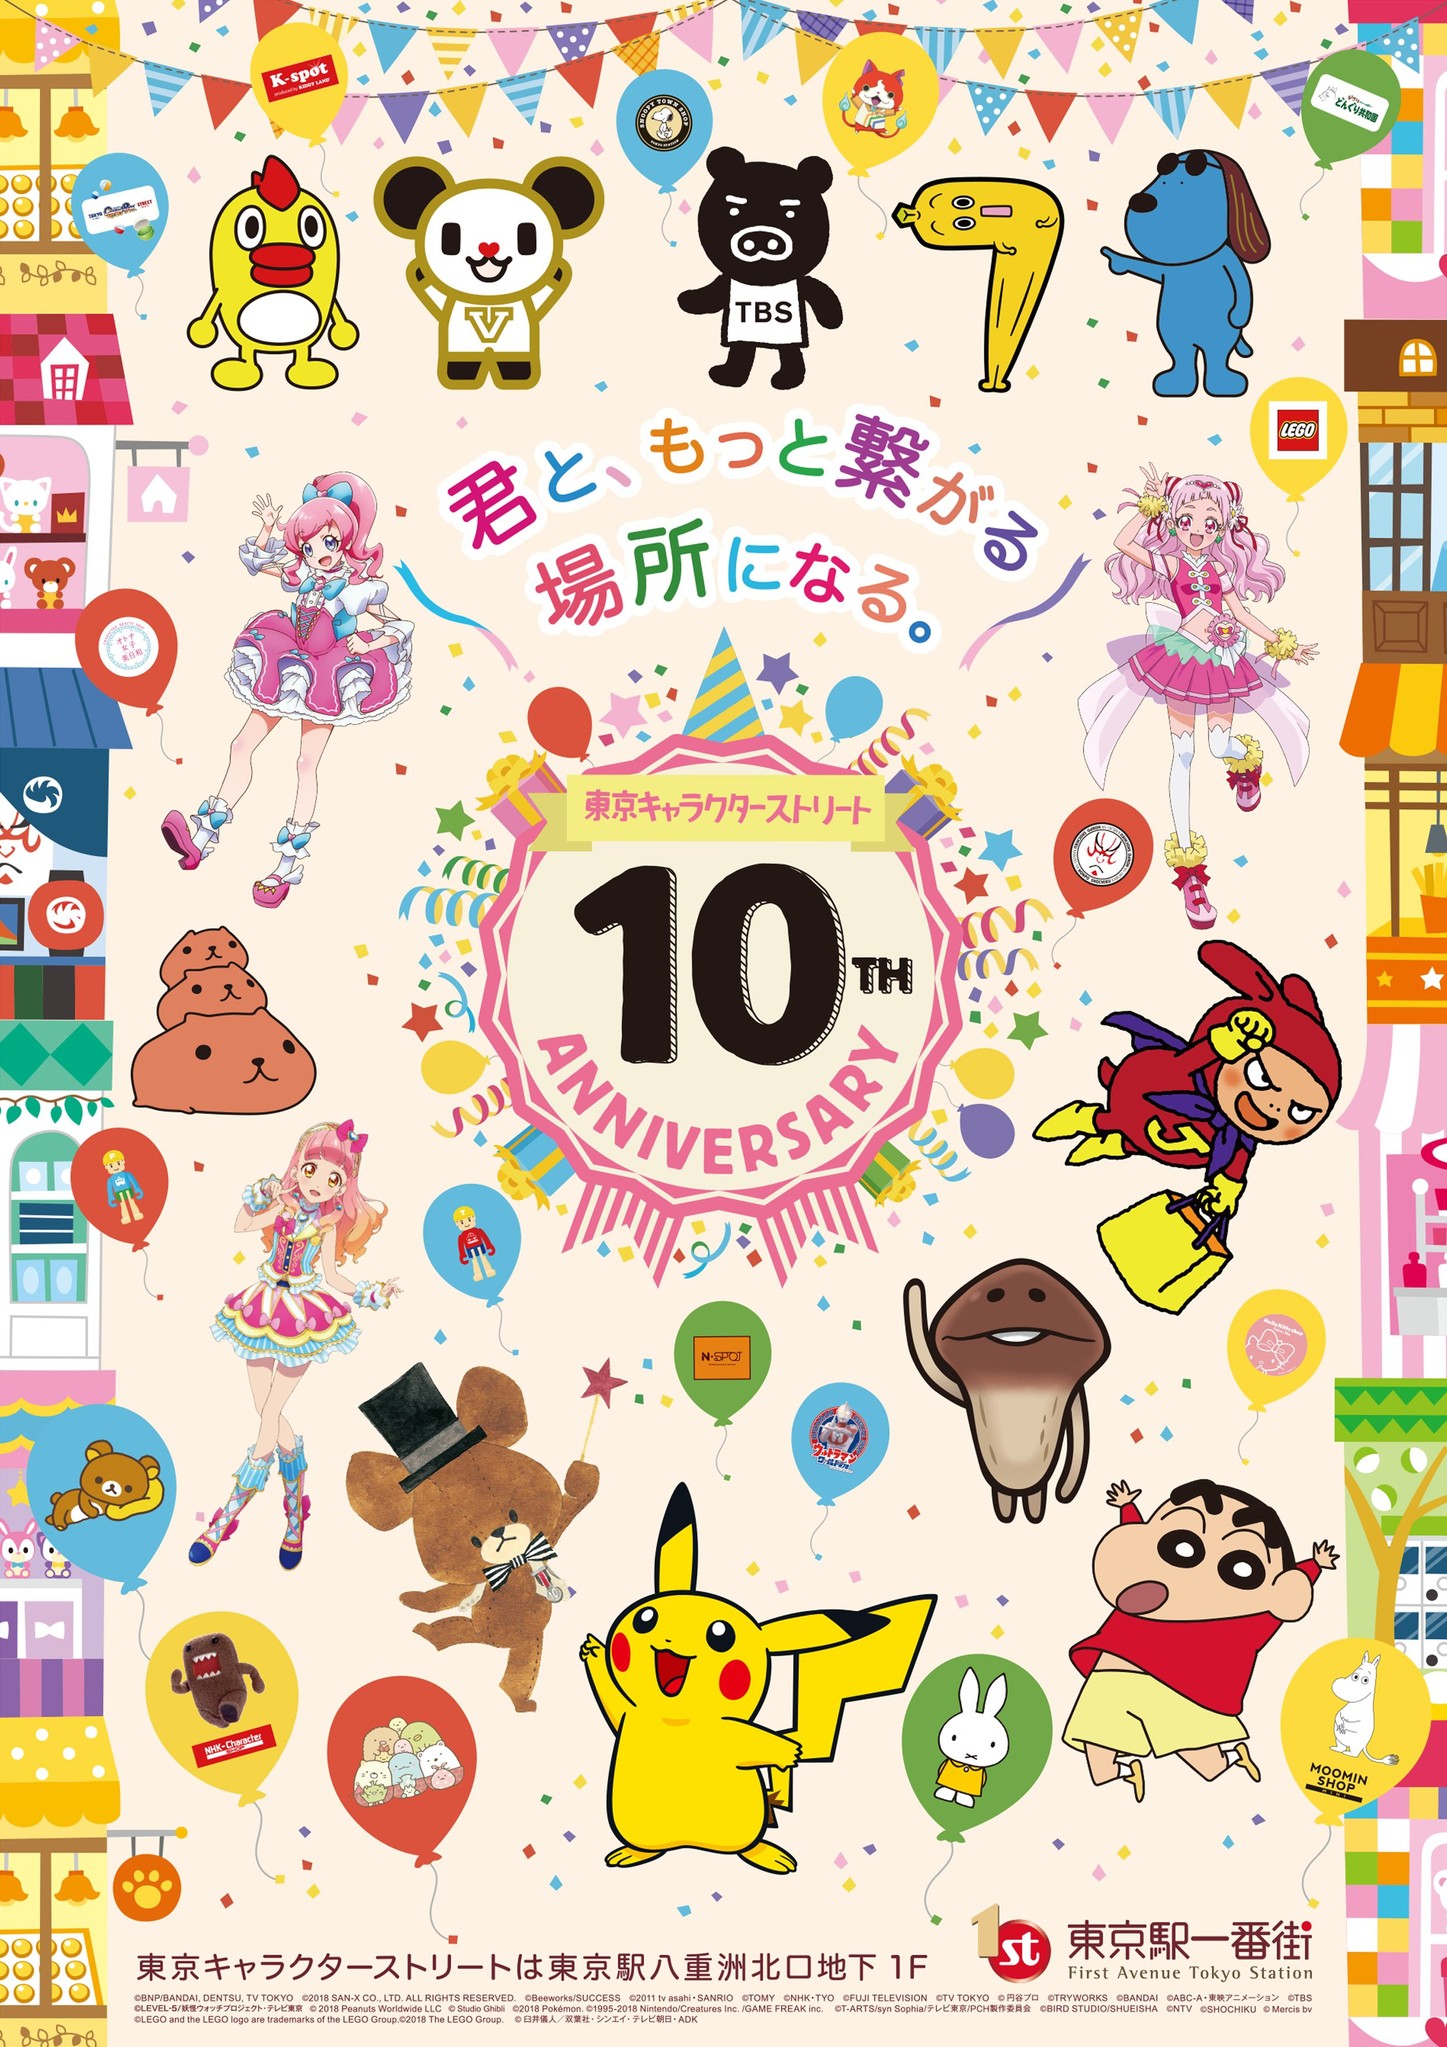 東京キャラクターストリート10周年記念 多数のキャラクターが出演する記念動画の放映や豪華キャラクターによるグリーティングを実施 東京 ステーション開発株式会社のプレスリリース